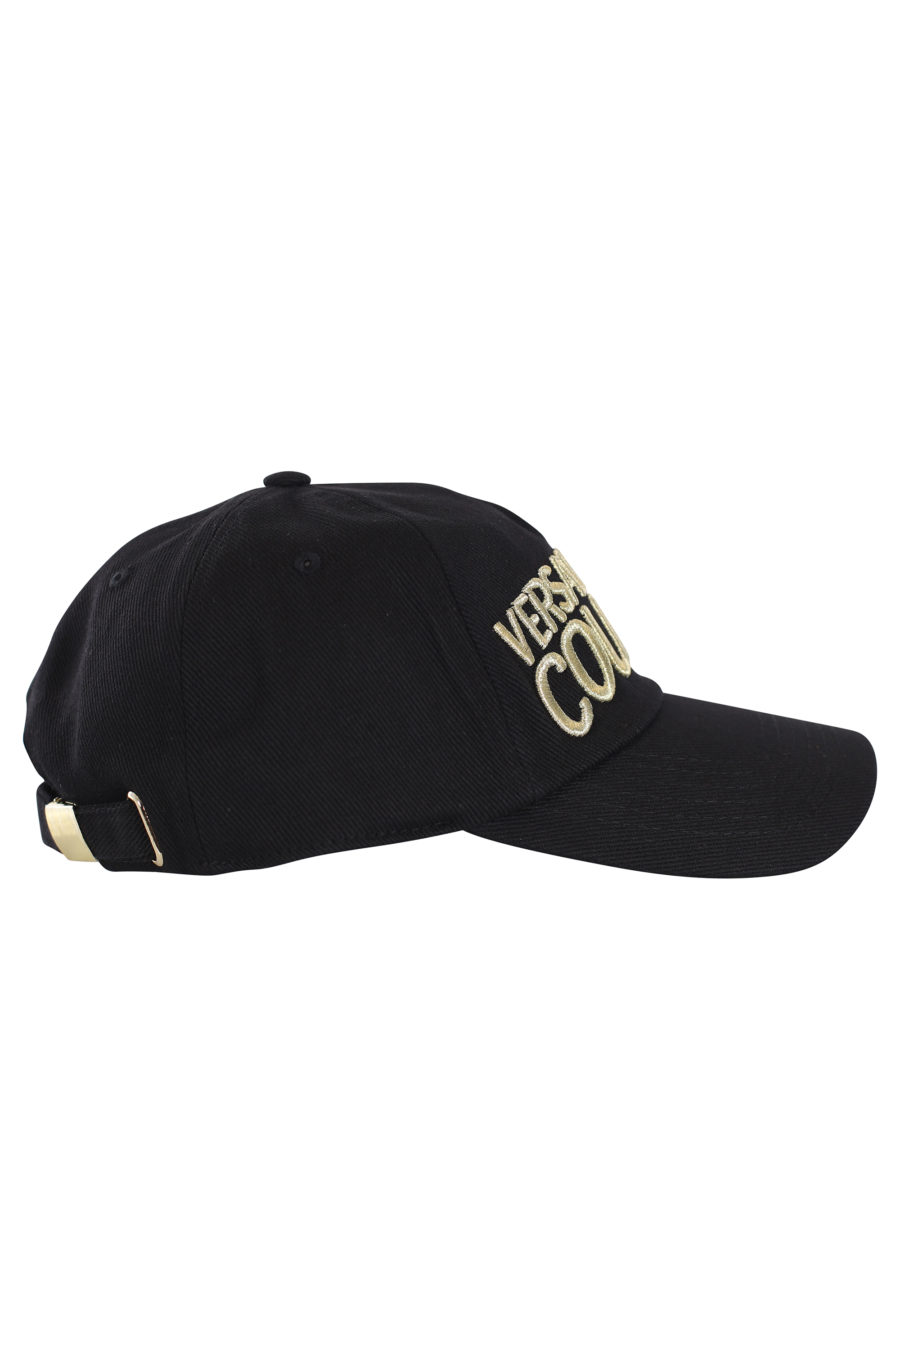 Gorra negra con logotipo dorado bordado - IMG 0135